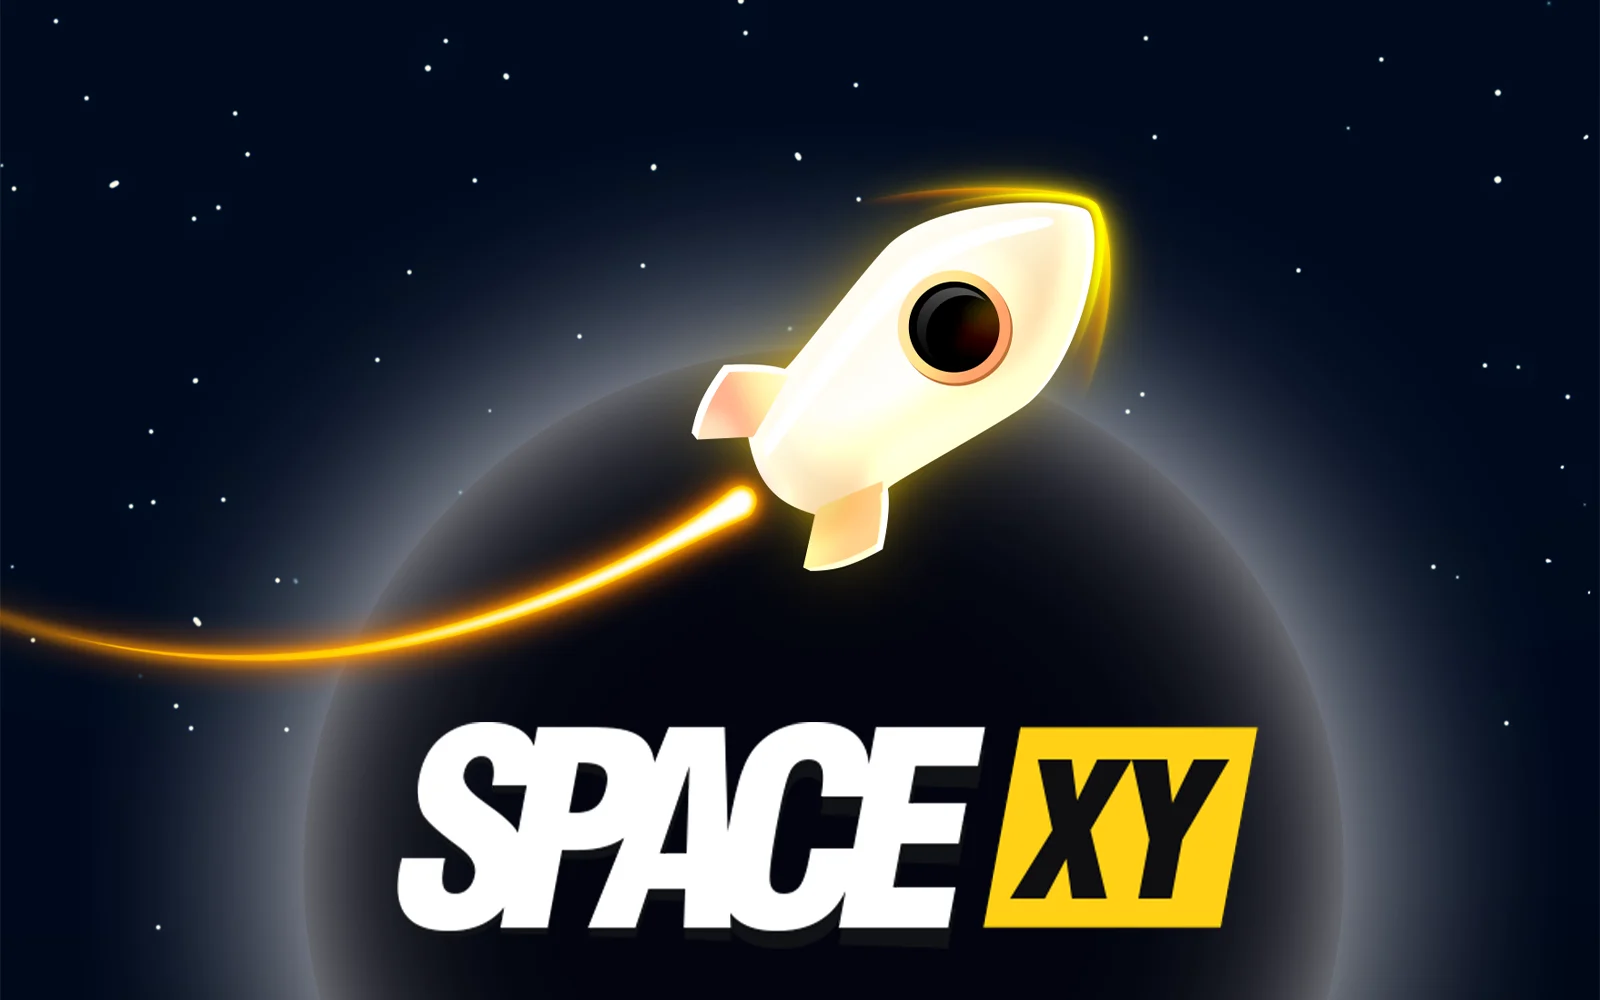 Zagraj w Space XY w kasynie online Starcasino.be